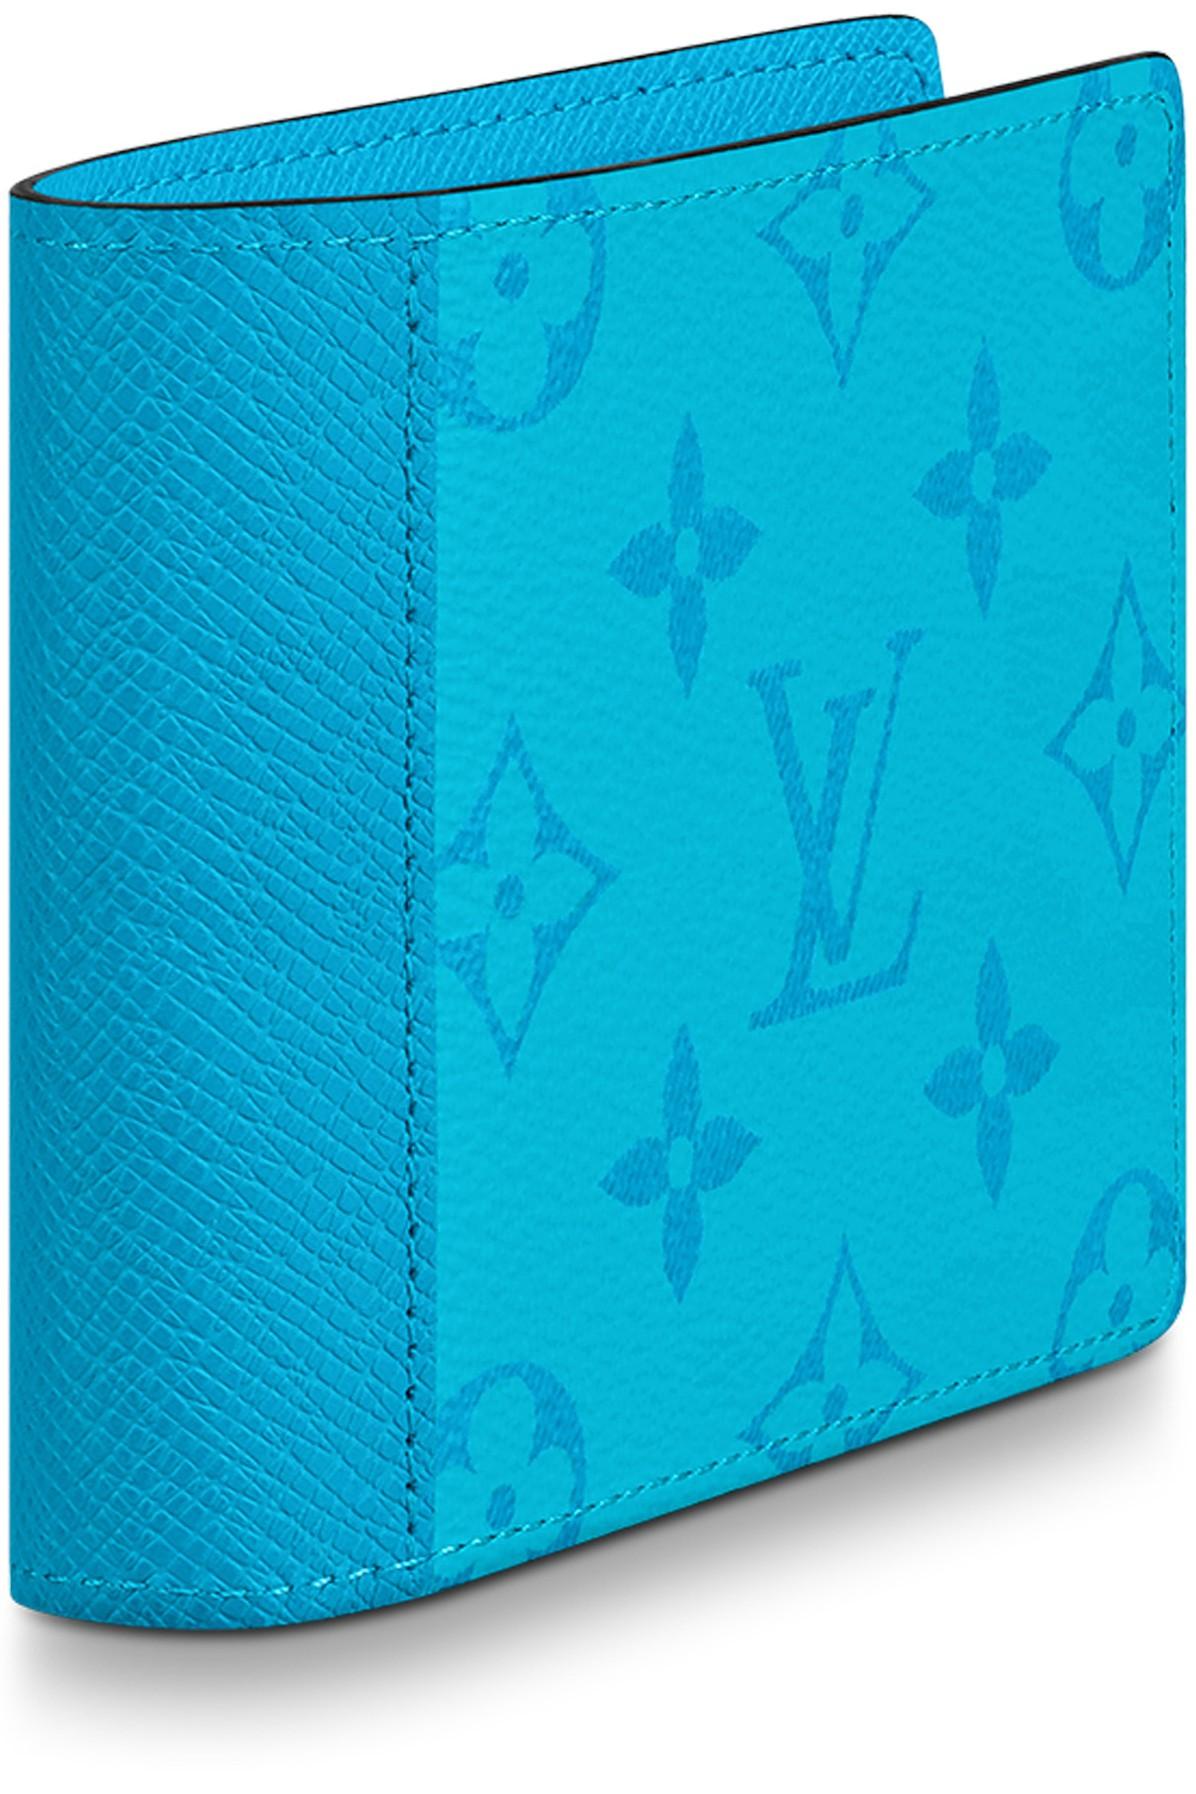 Rare LV multiple wallet (Split pacific blue), Men's Fashion